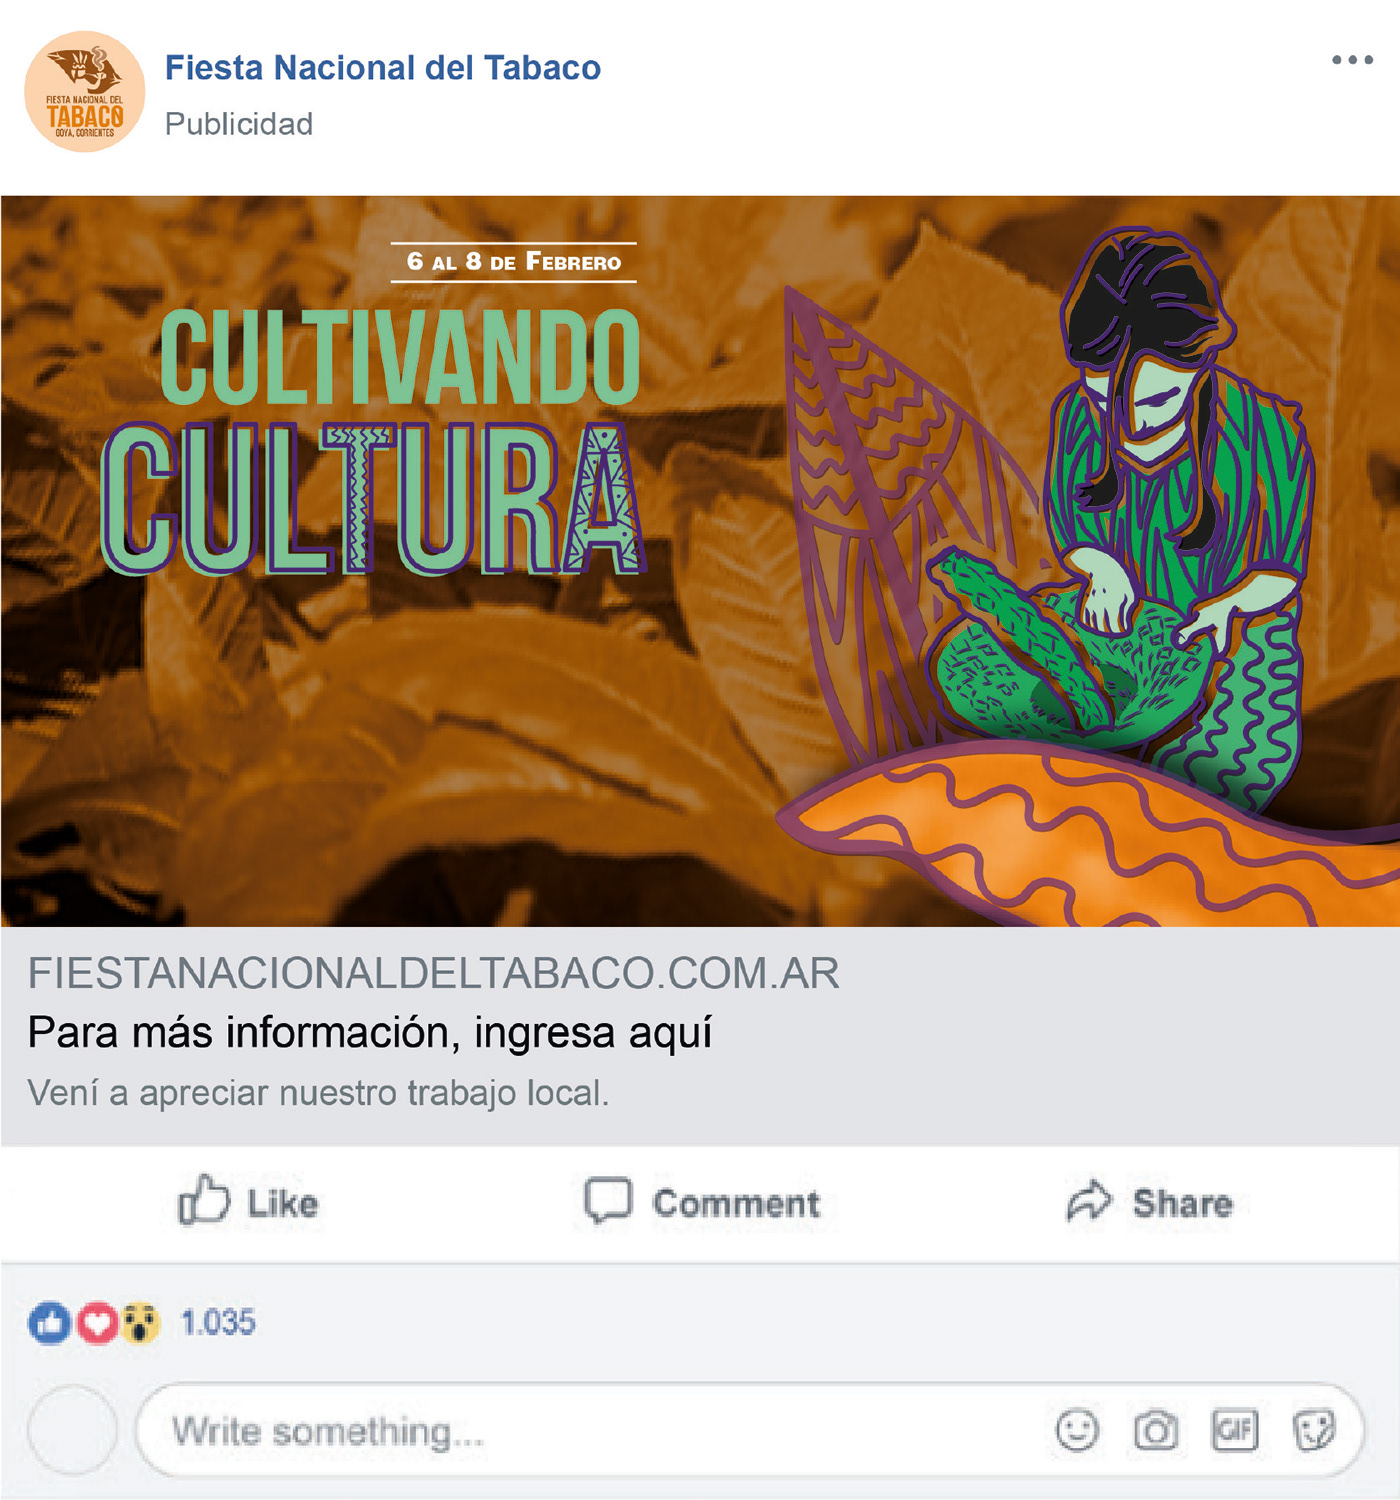 fiesta folclore sistema tabaco tobacco Universidad de Morón corrientes guarani Indigenas